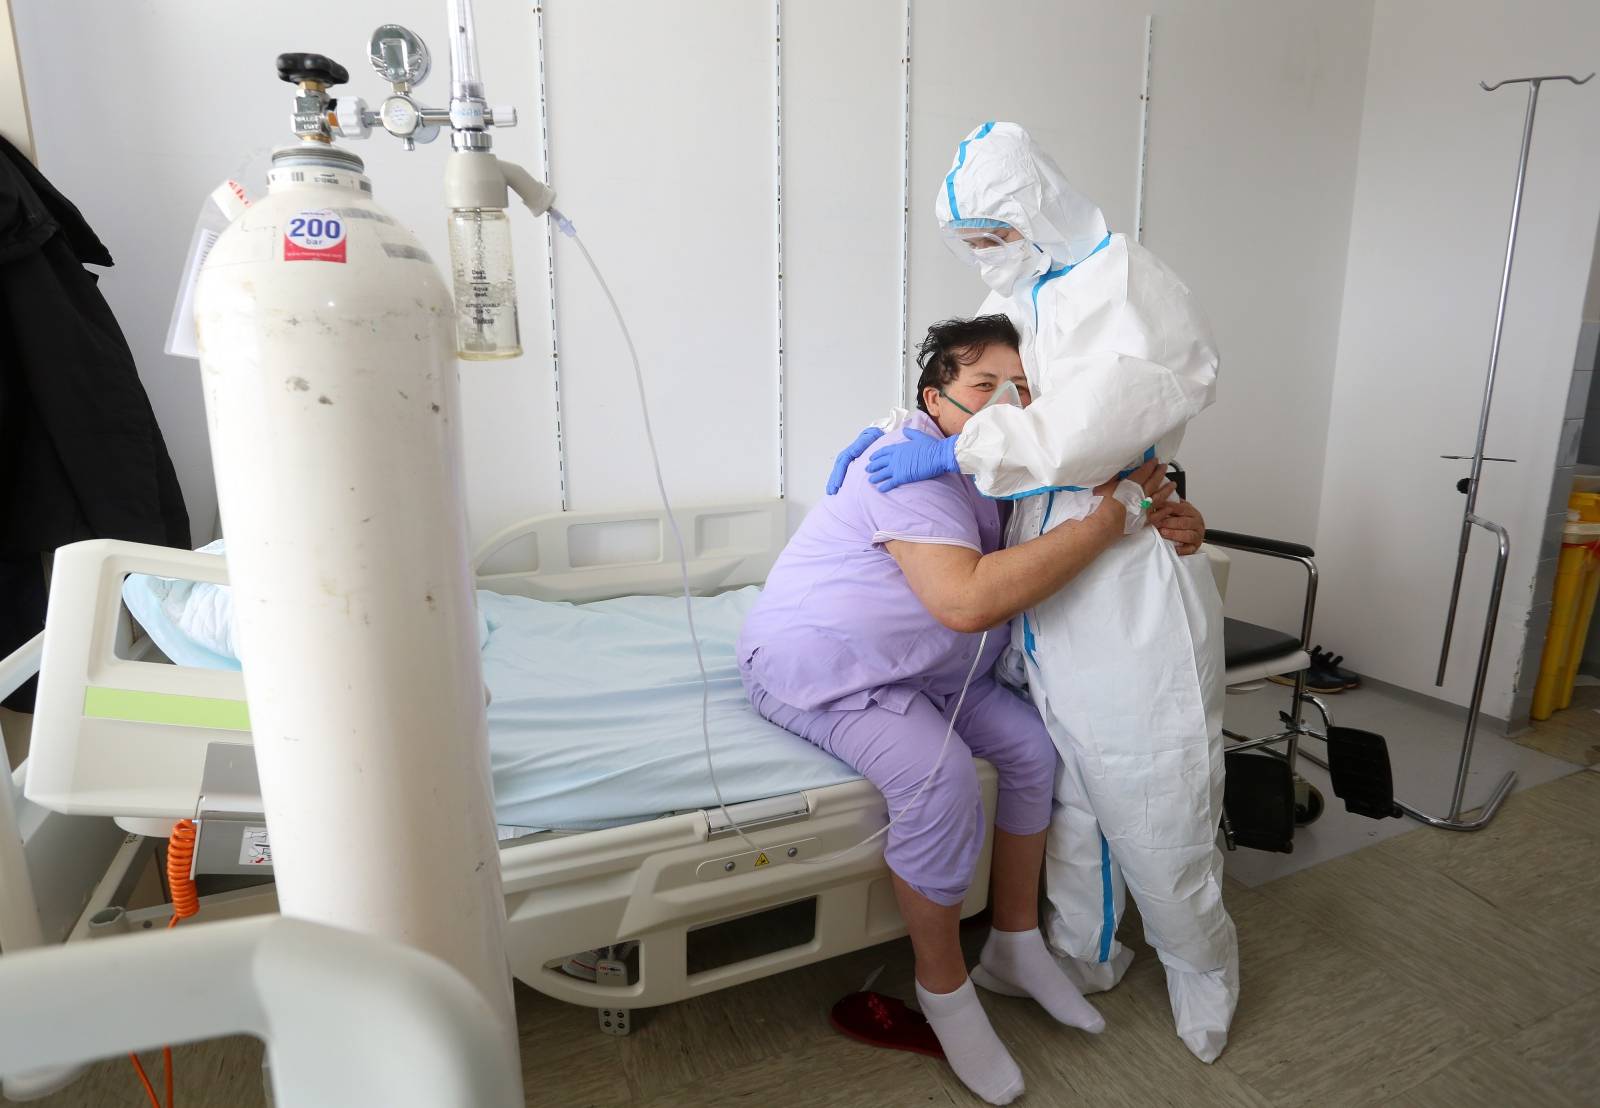 Kapaciteti covid odjela karlovačke bolnice popunjeni, na respir